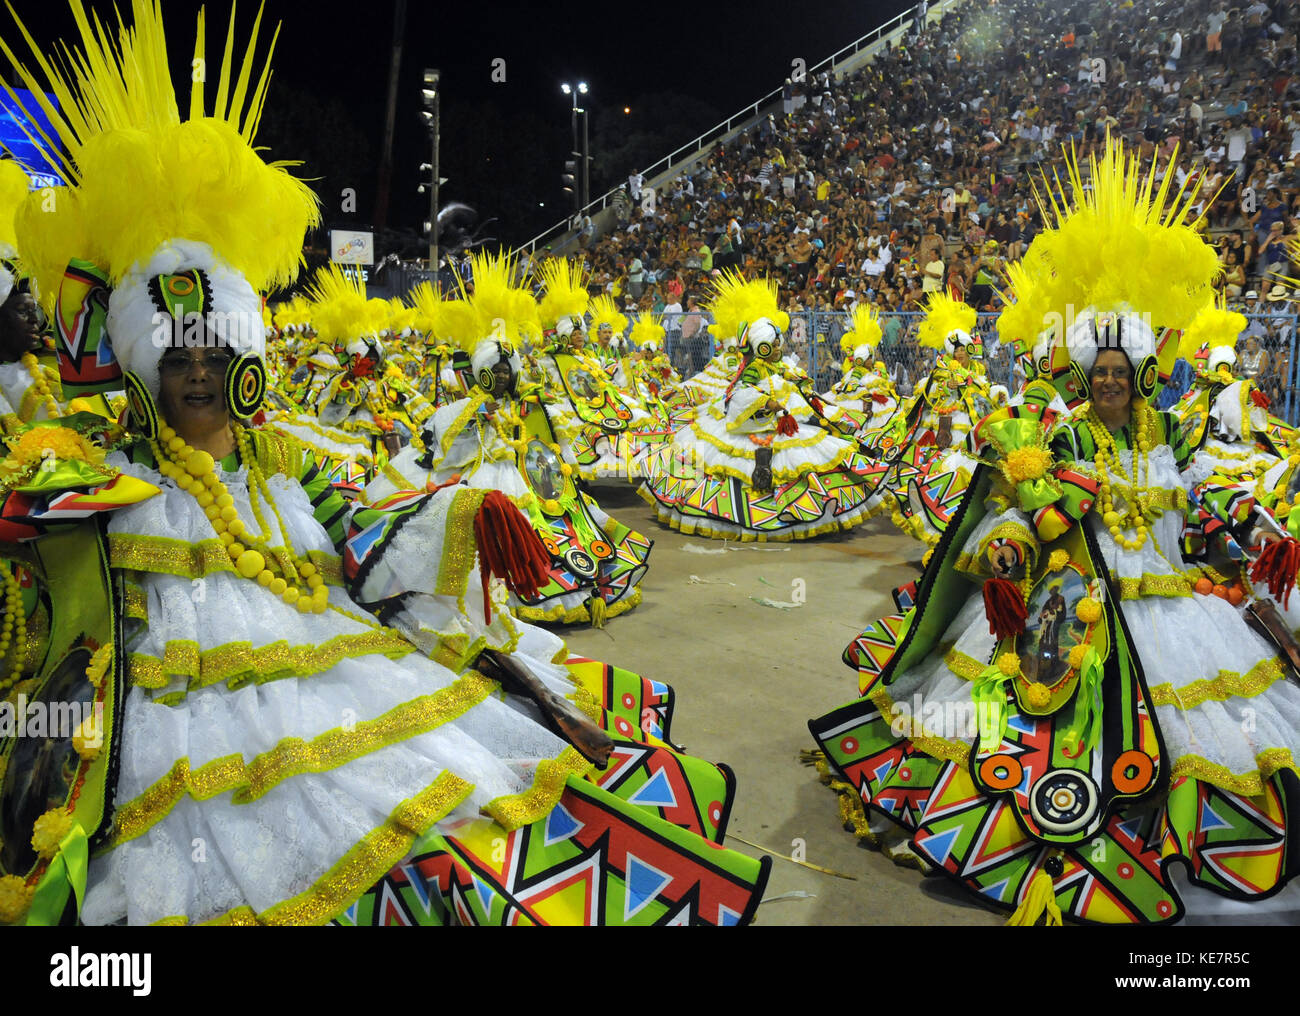 Rio de Janeiro, Brésil - le 10 février 2013 : l'école de samba salgueiro rio à effectuer à marques de sapucai appelé sambódromo, pour le carnaval samba pa Banque D'Images